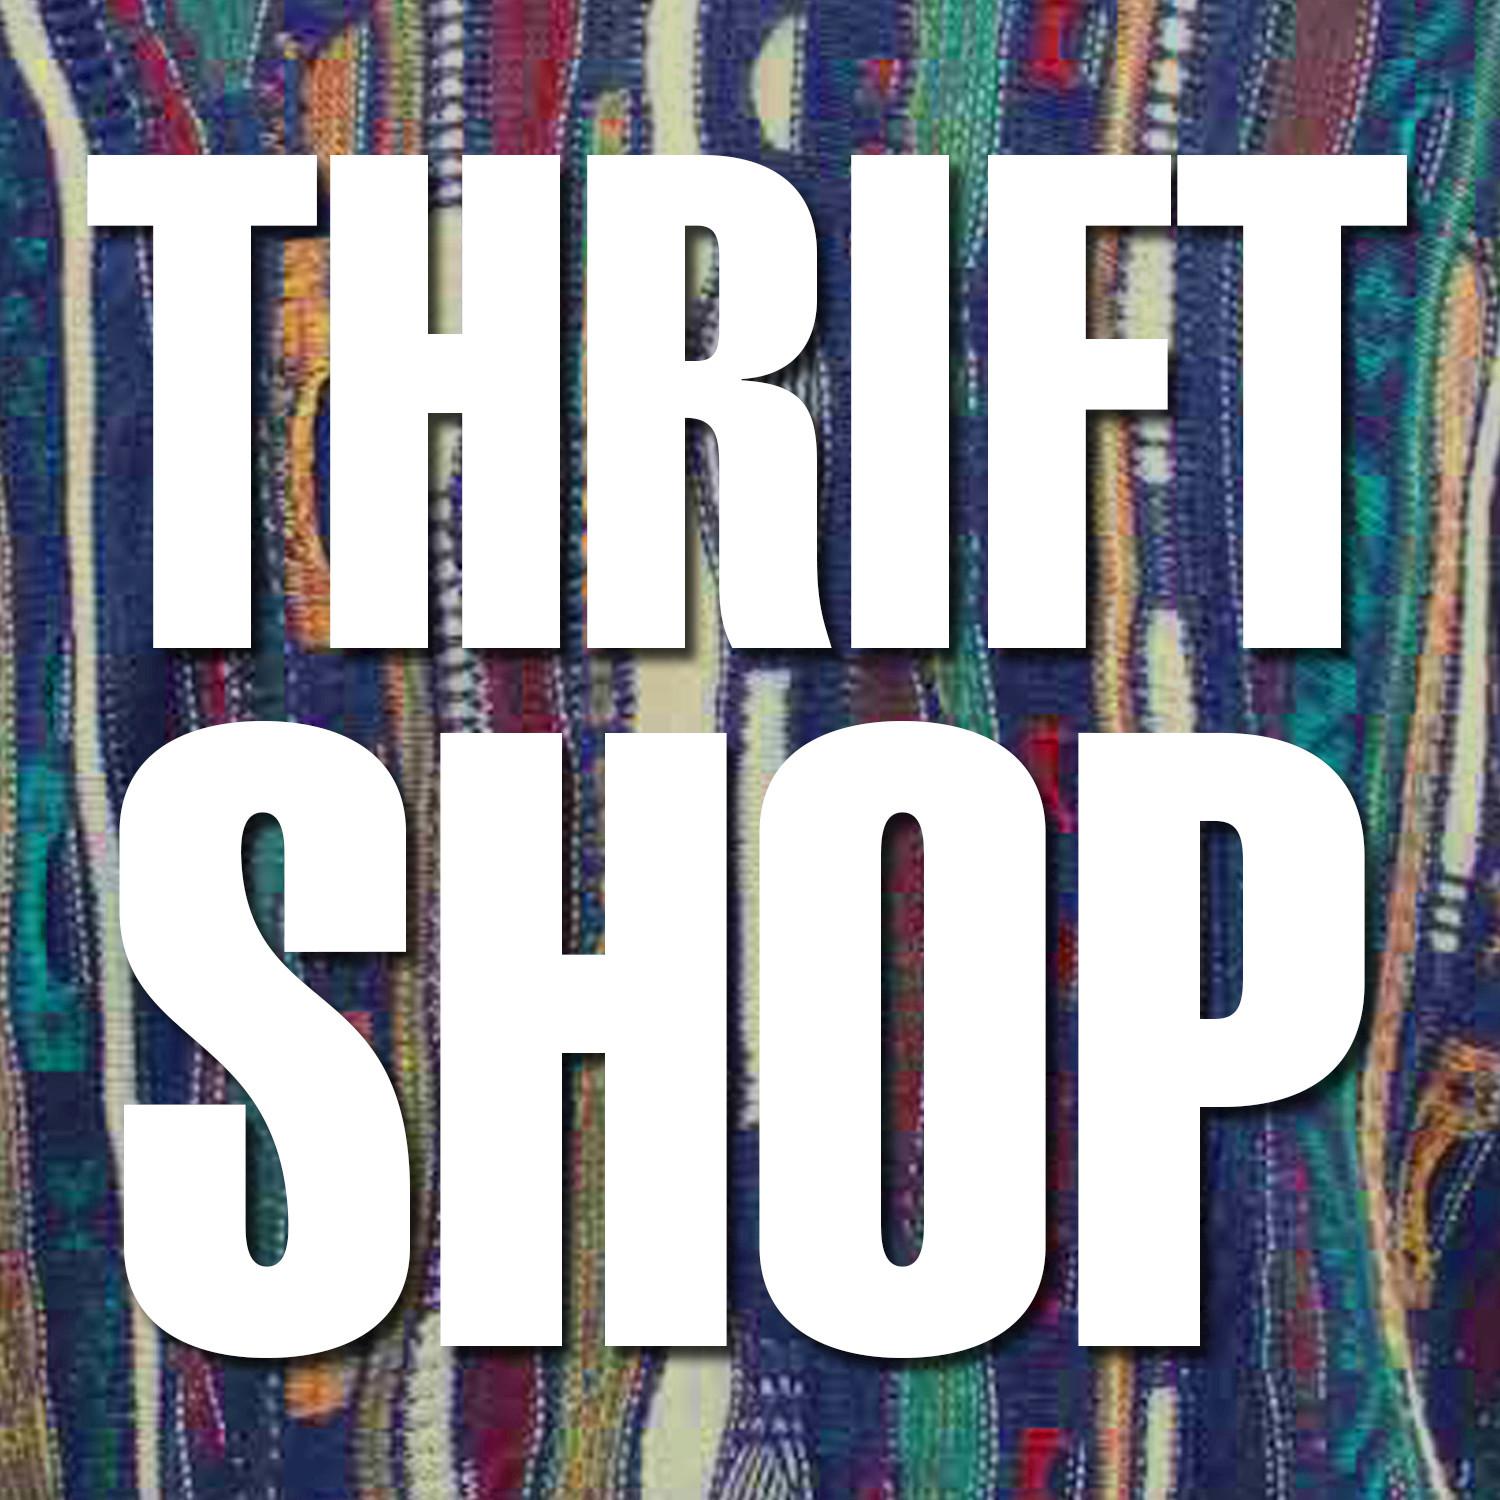 Wanz macklemore thrift shop. Thrift shop. Macklemore Thrift shop. Macklemore Ryan Lewis Thrift shop. Wänz Thrift shop.